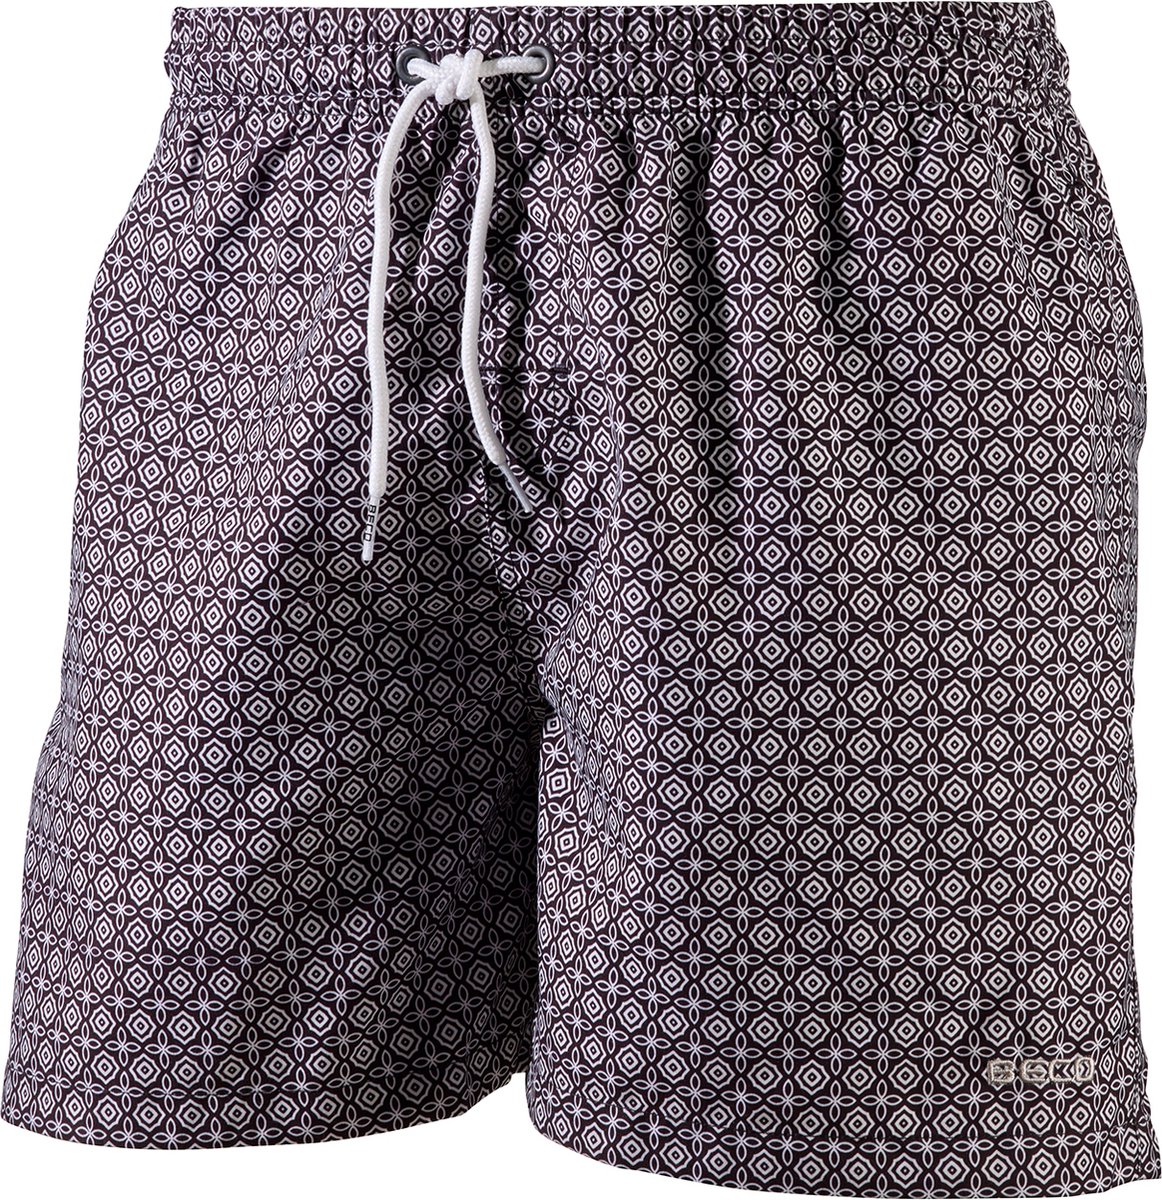 BECO shorts, binnenbroekje, elastische band, lengte 42 cm, 3 zakjes, zwart, maat M